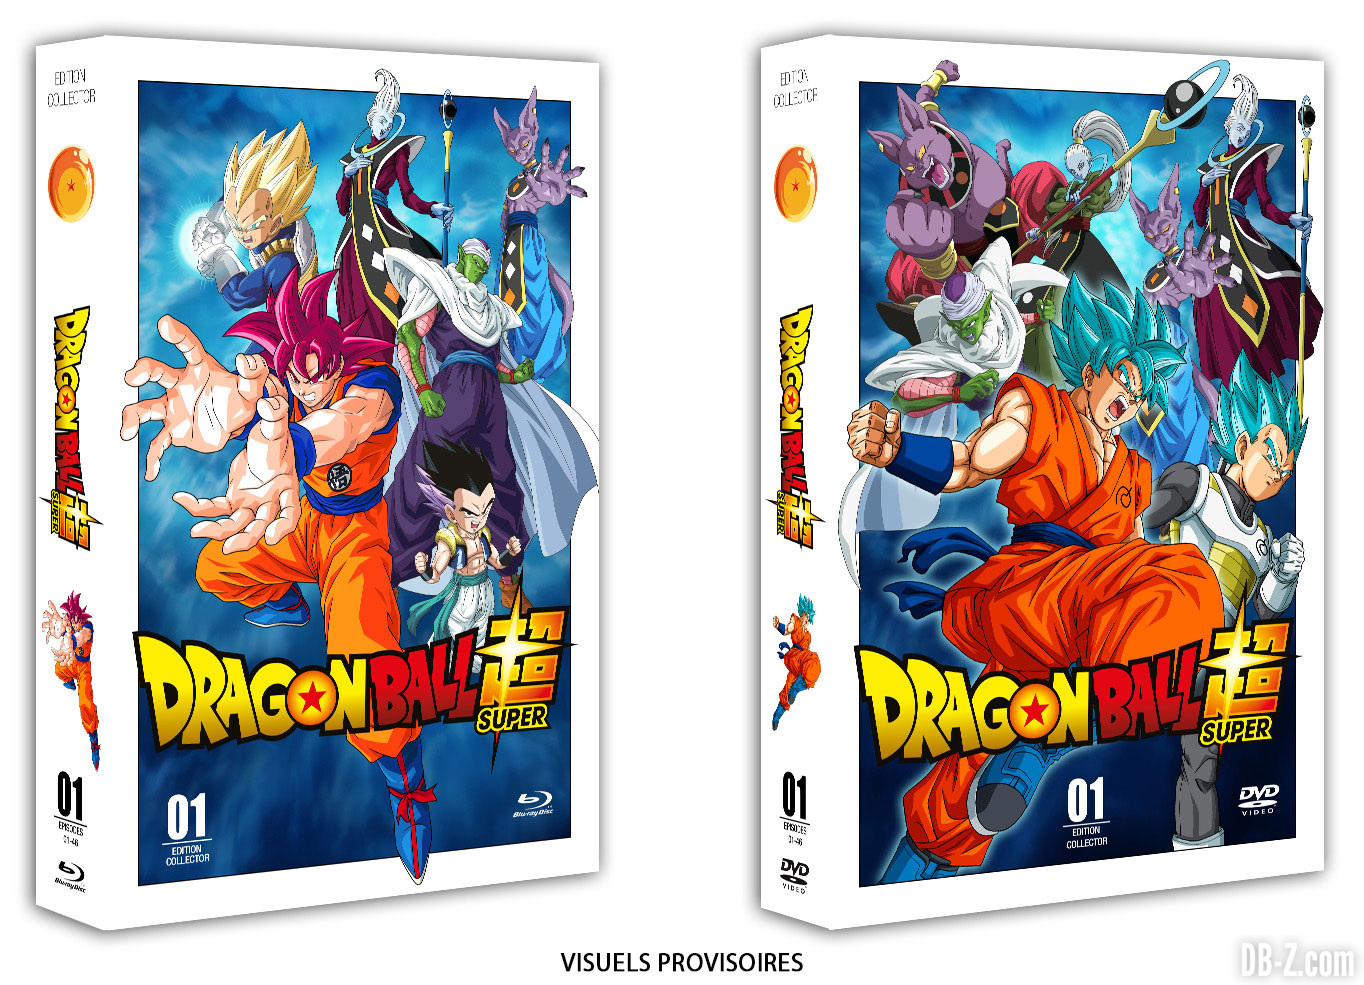 Dragon Ball Super en VF  L'intégrale en DVD & BluRay arrive en BOX